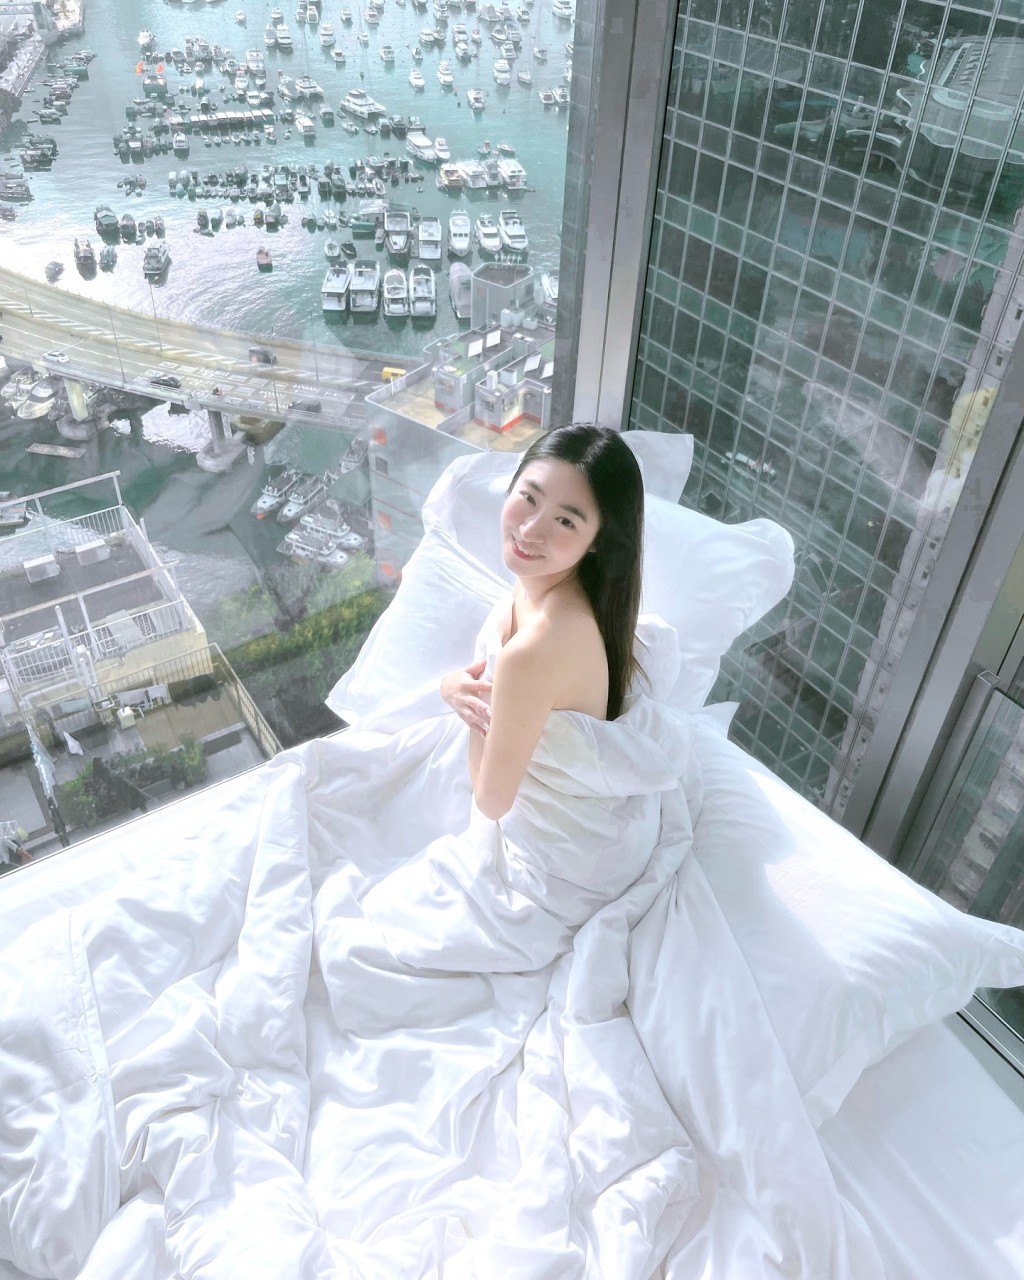 黃紫恩早前分享一張疑似在天后一間酒店打卡的床照。